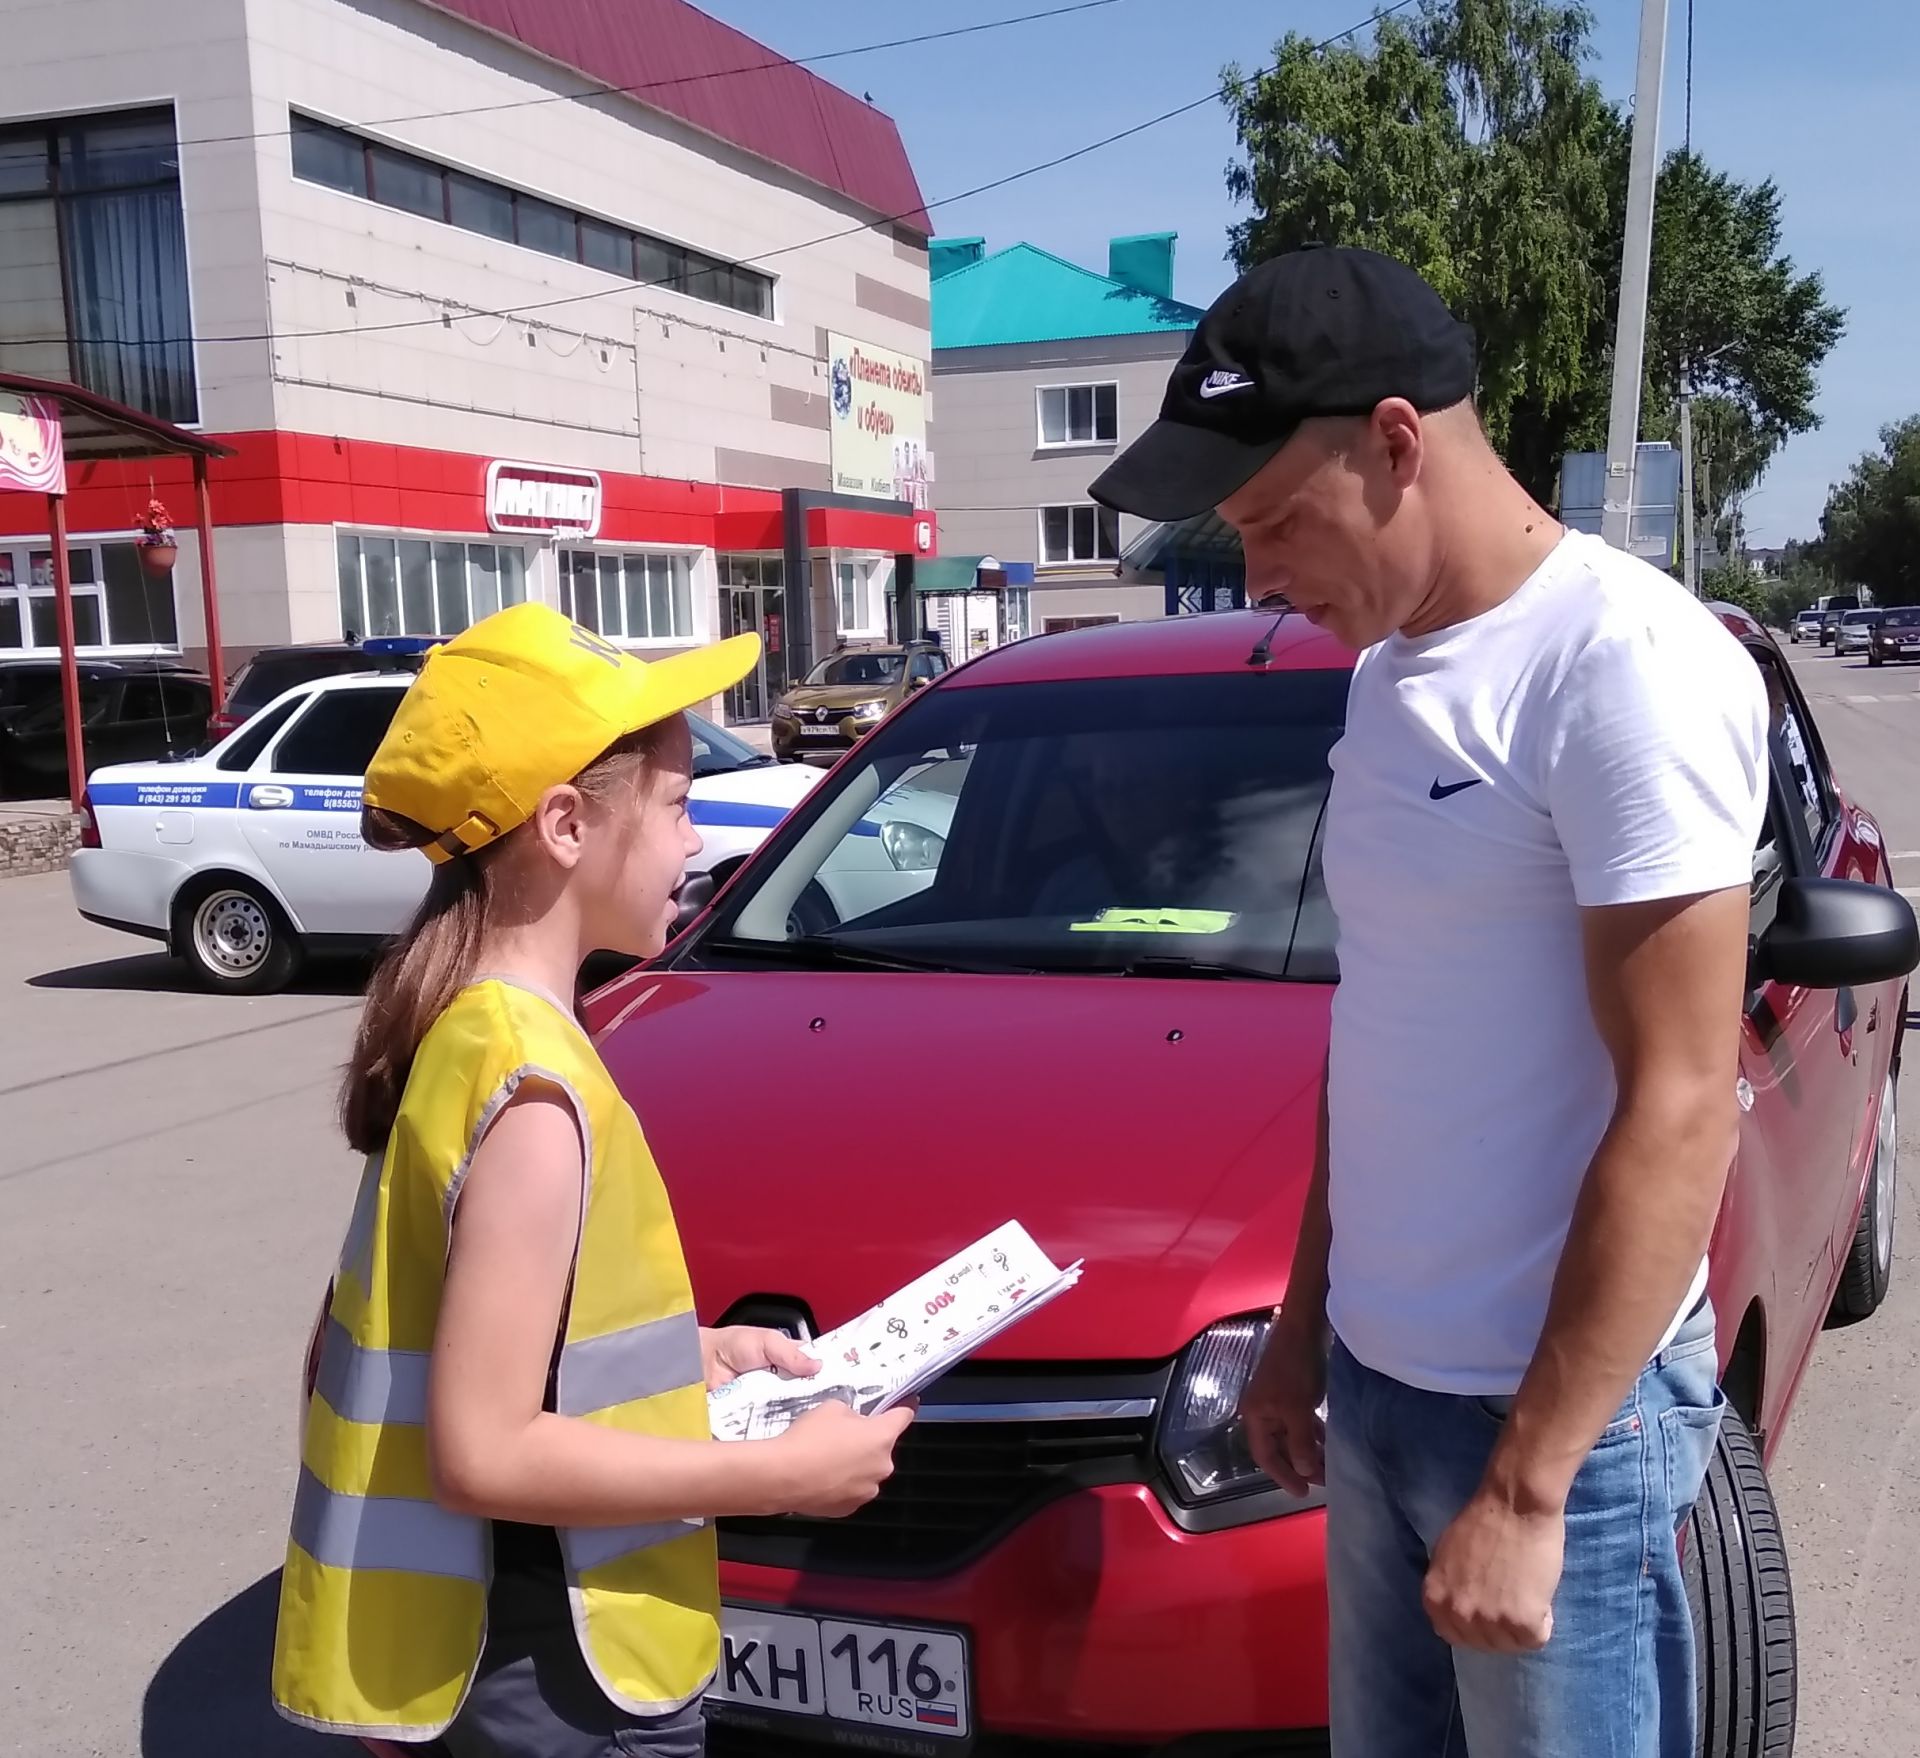 В пришкольных лагерях Татарстана проходят мероприятия по профилактике детского дорожно-транспортного травматизма